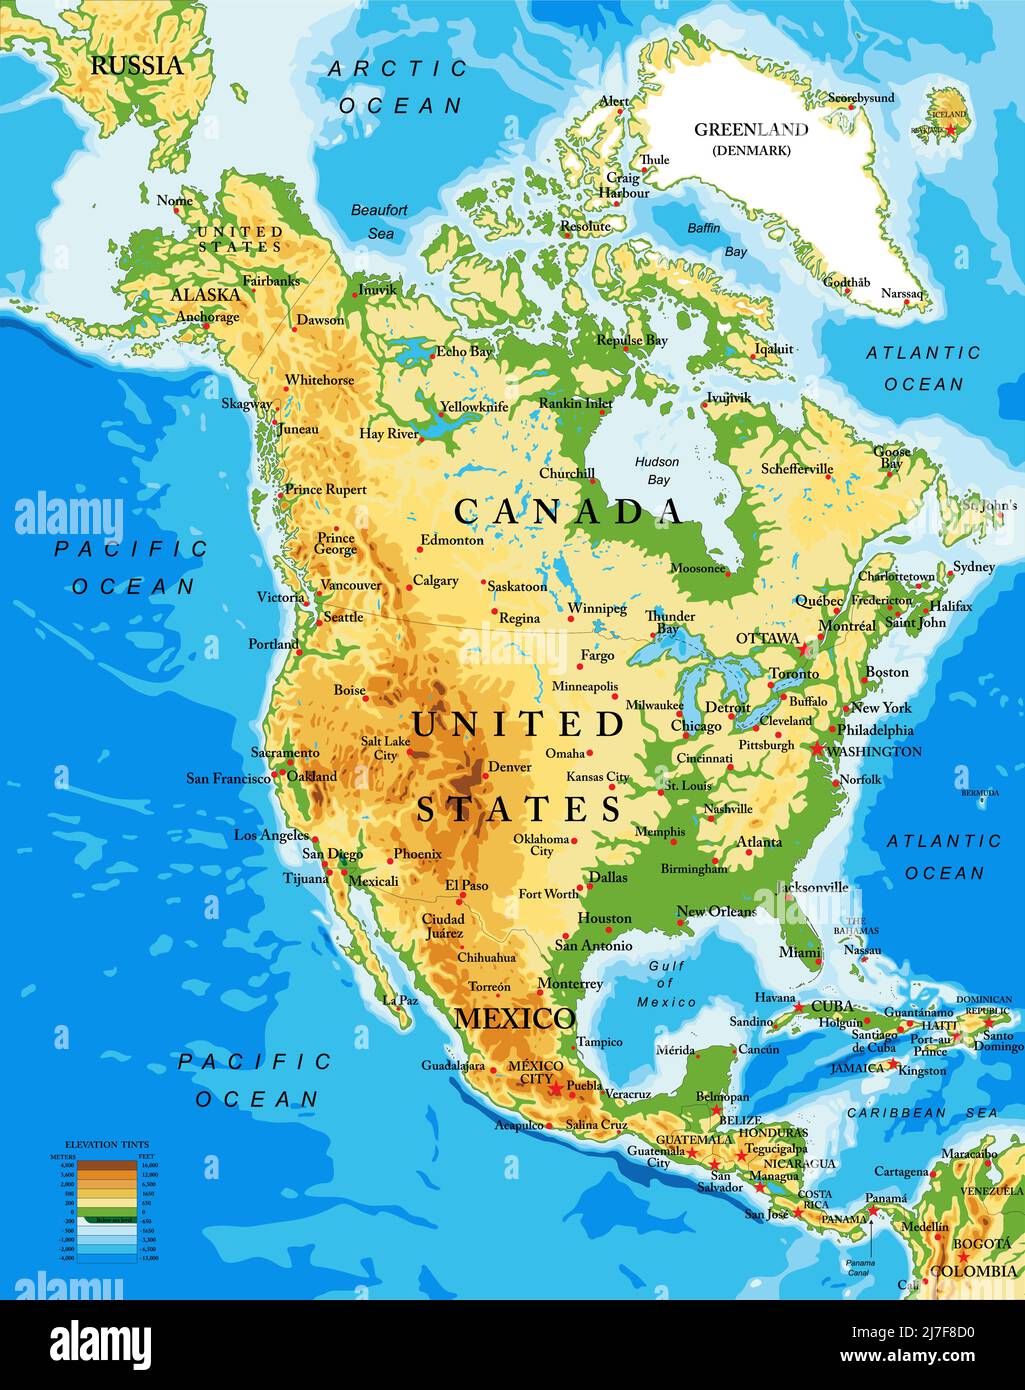 America settentrionale cartina fisica Immagini Vettoriali Stock - Alamy